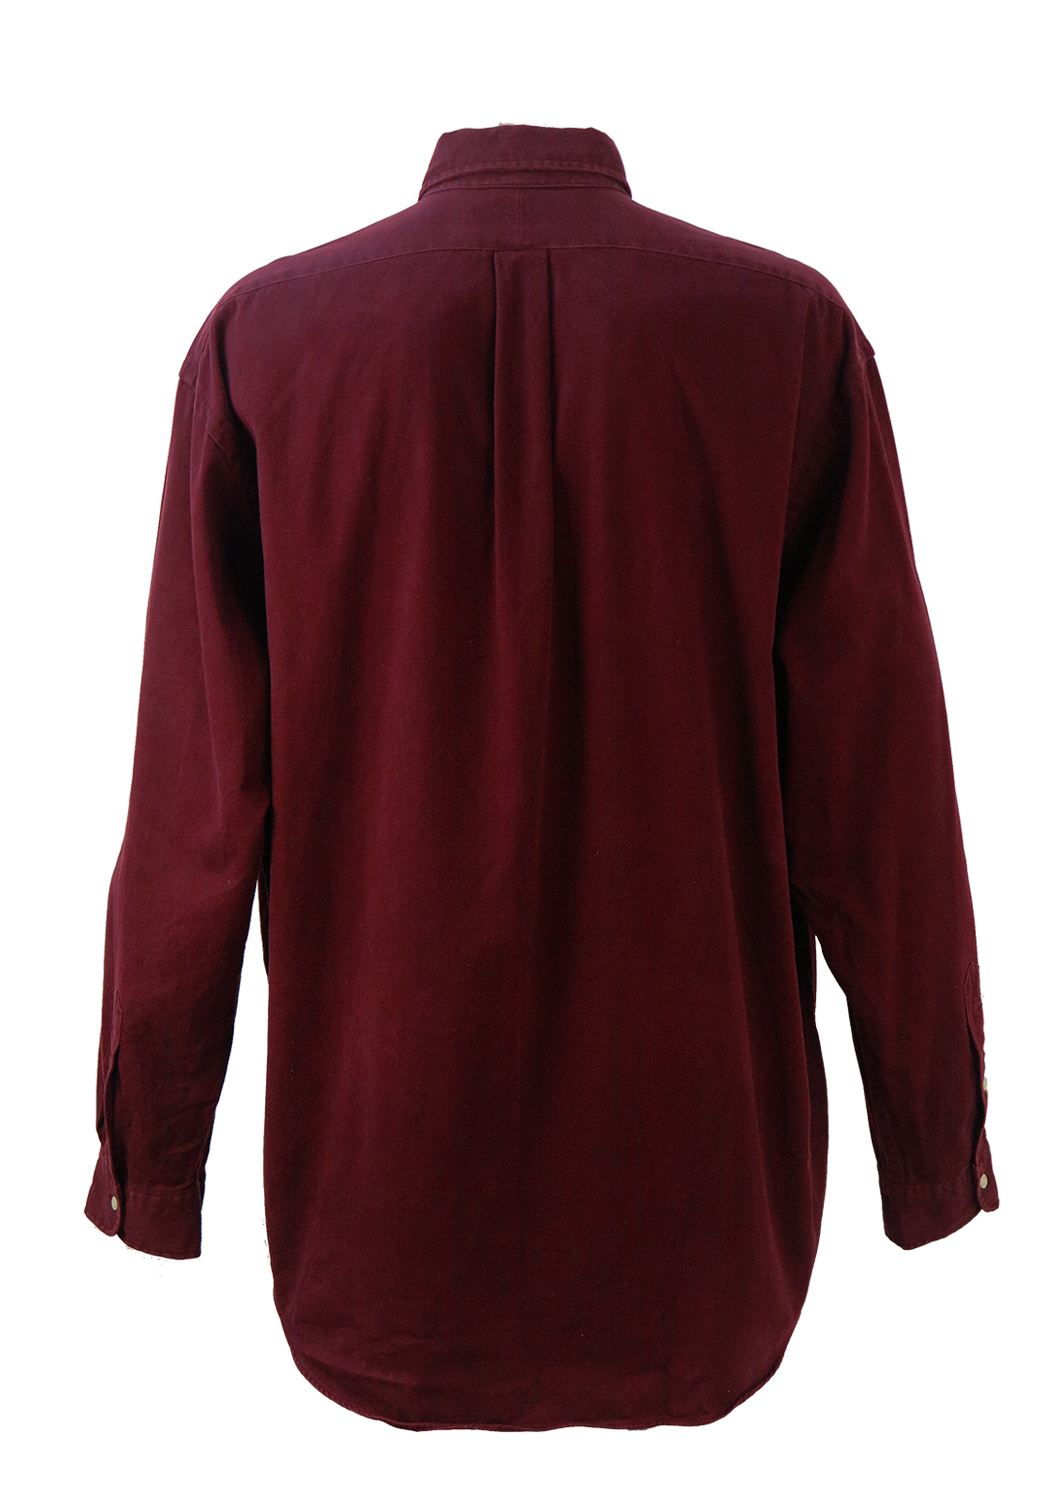 Ralph Lauren Dark Red Cotton Shirt - XXXL/XXXXL | Reign Vintage